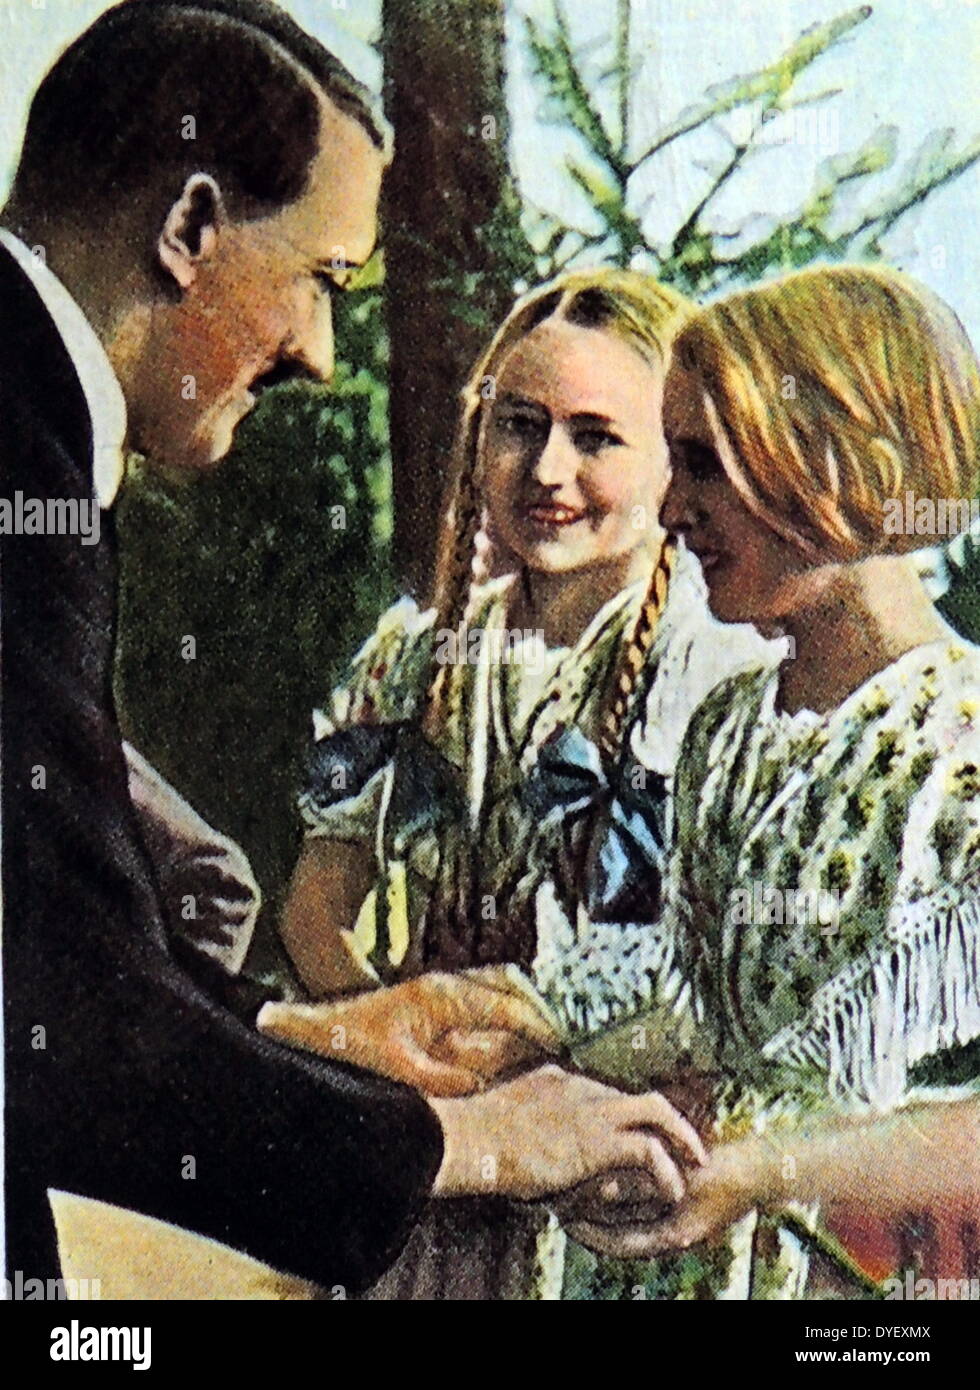 Deutsche Mädchen Jungen arischen Typ gezeigt, Adolf Hitler, Bayern, Deutschland 1934 Gruß Stockfoto